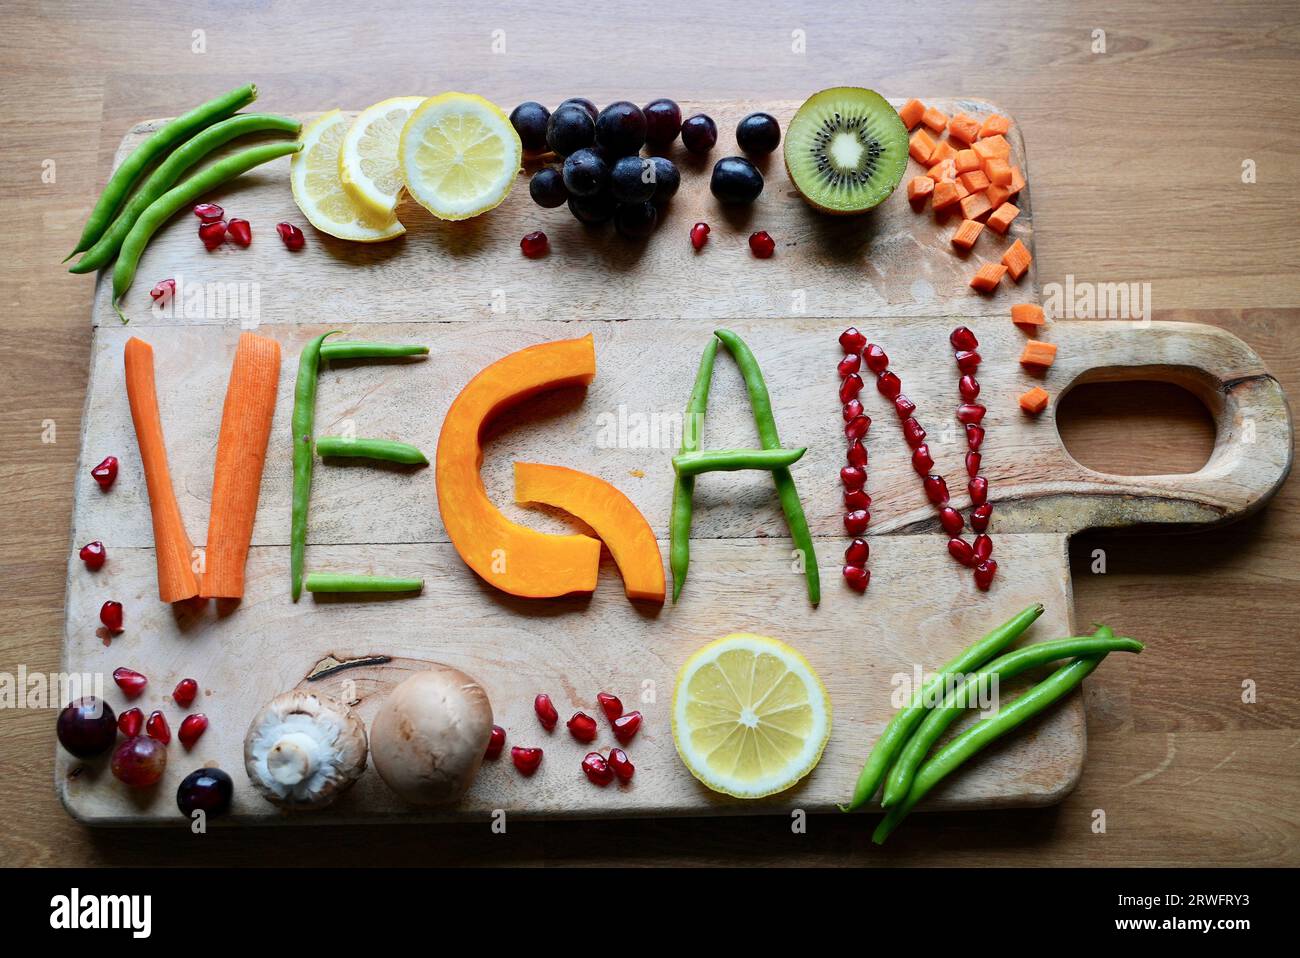 Vegane Ernährung enthält viel Obst, Gemüse und rohkost Foto Stock